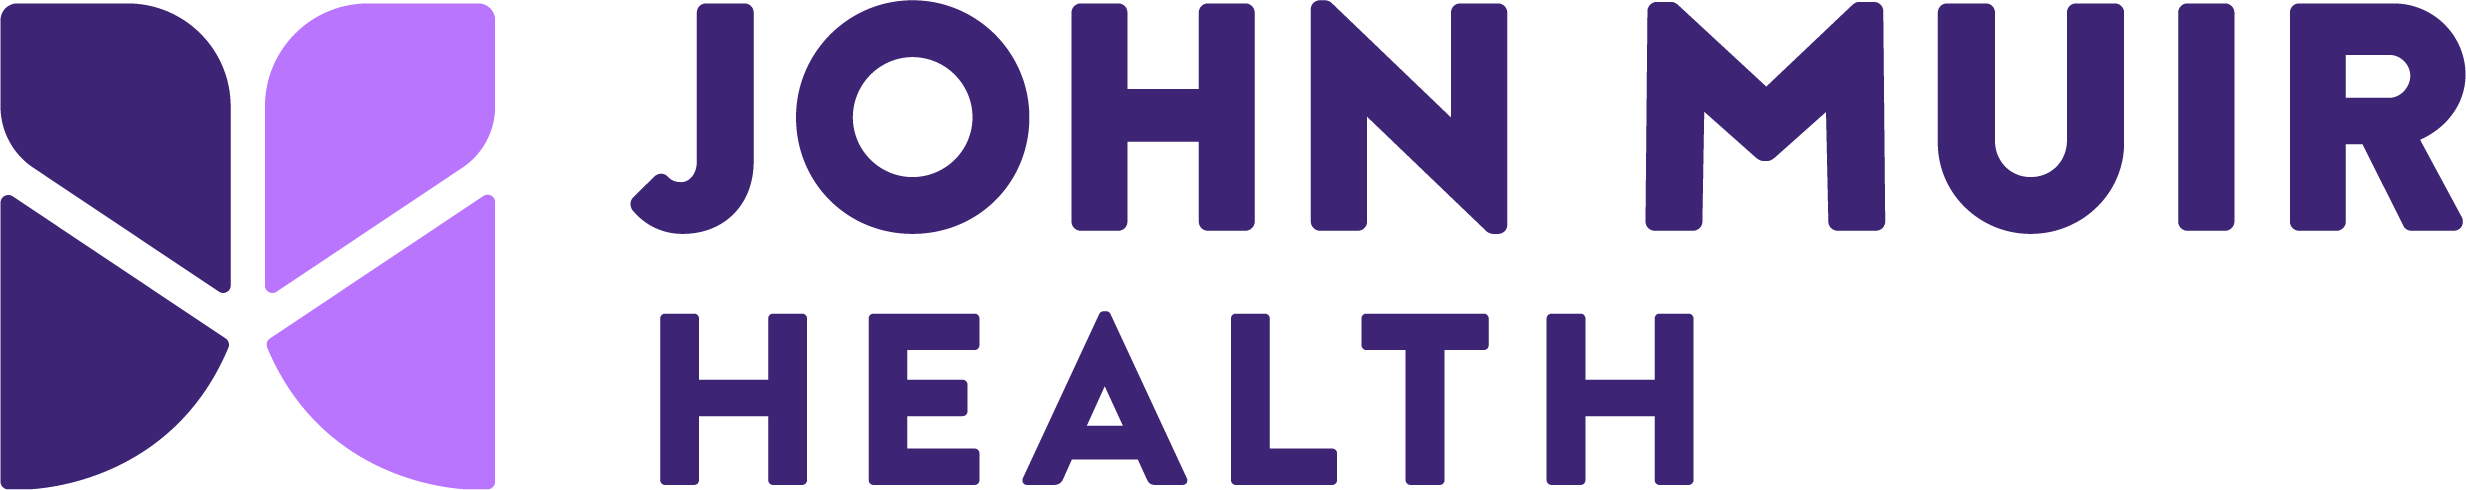 John Muir Health Login